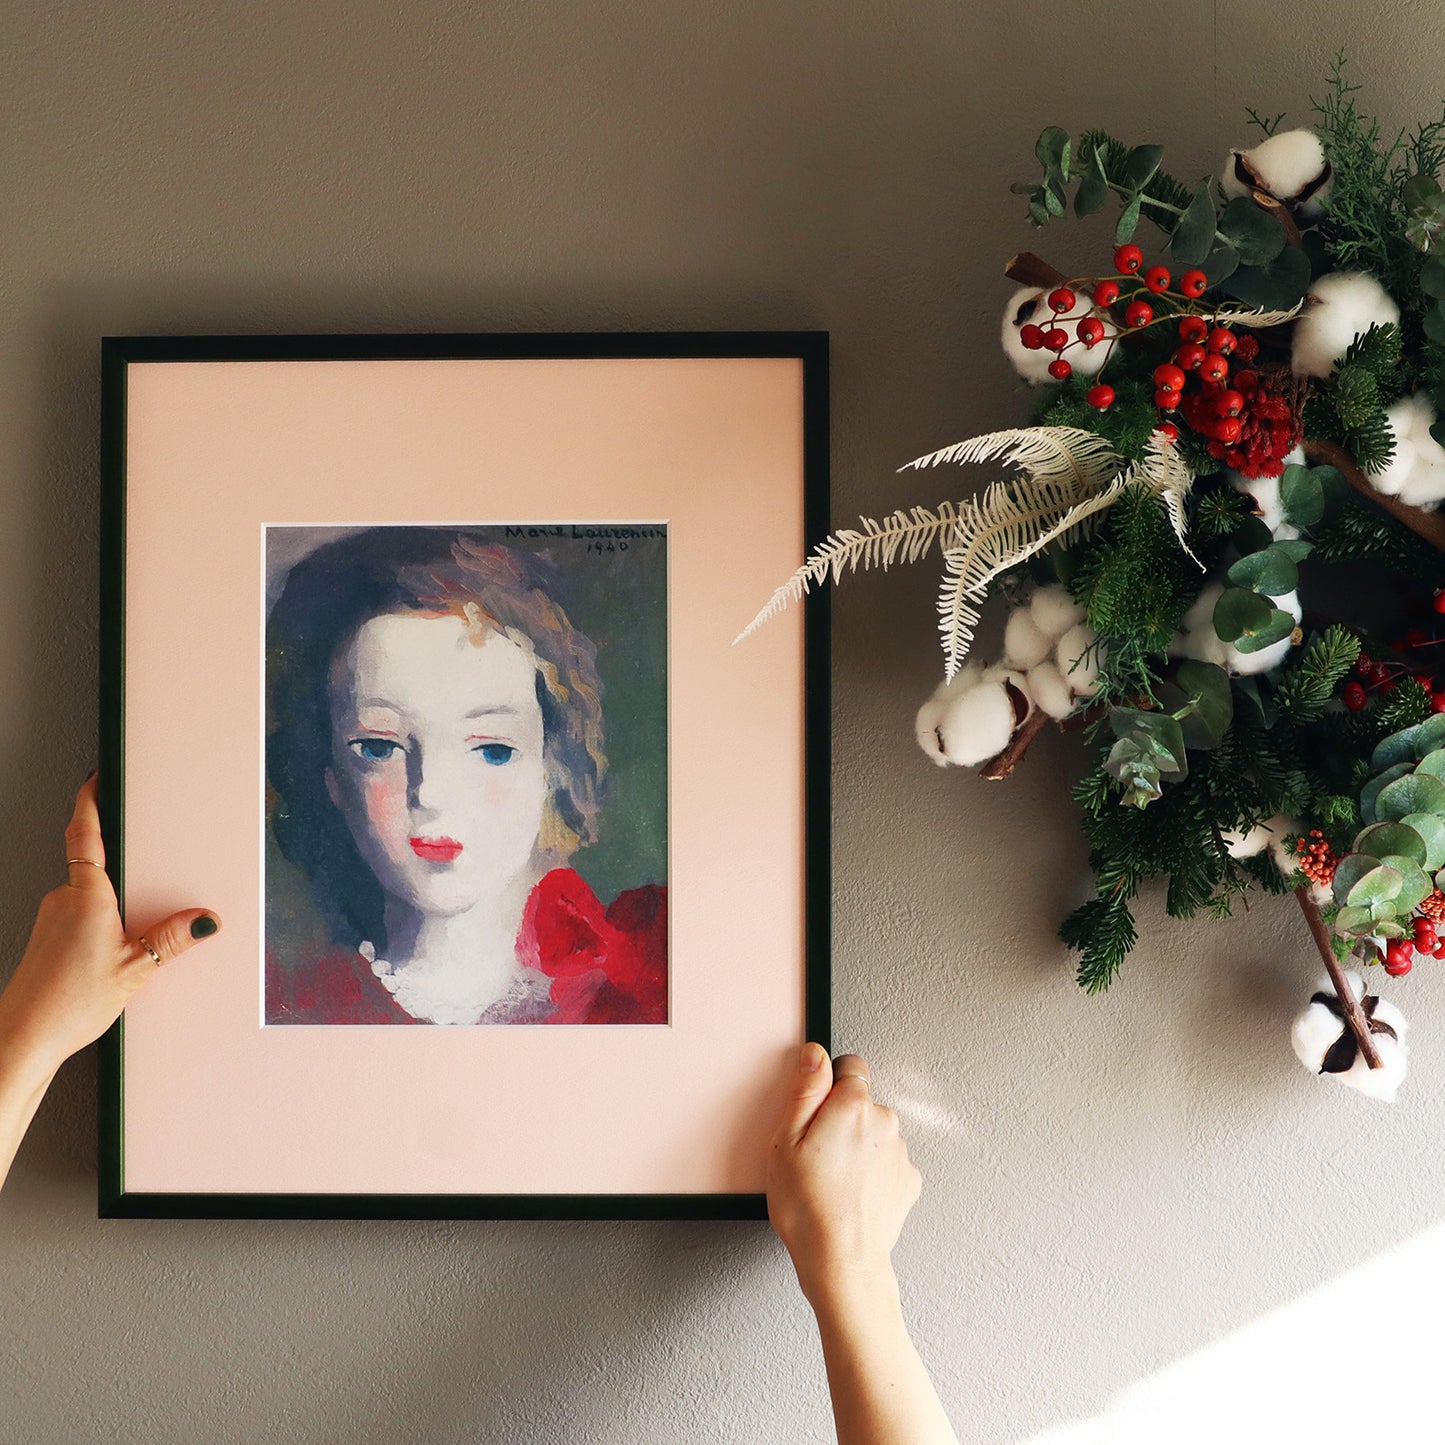 マリー・ローランサン 「女の顔 1940年」アートポスター（フレーム付き） / Marie Laurencin “Woman Face 1940” Art Frame